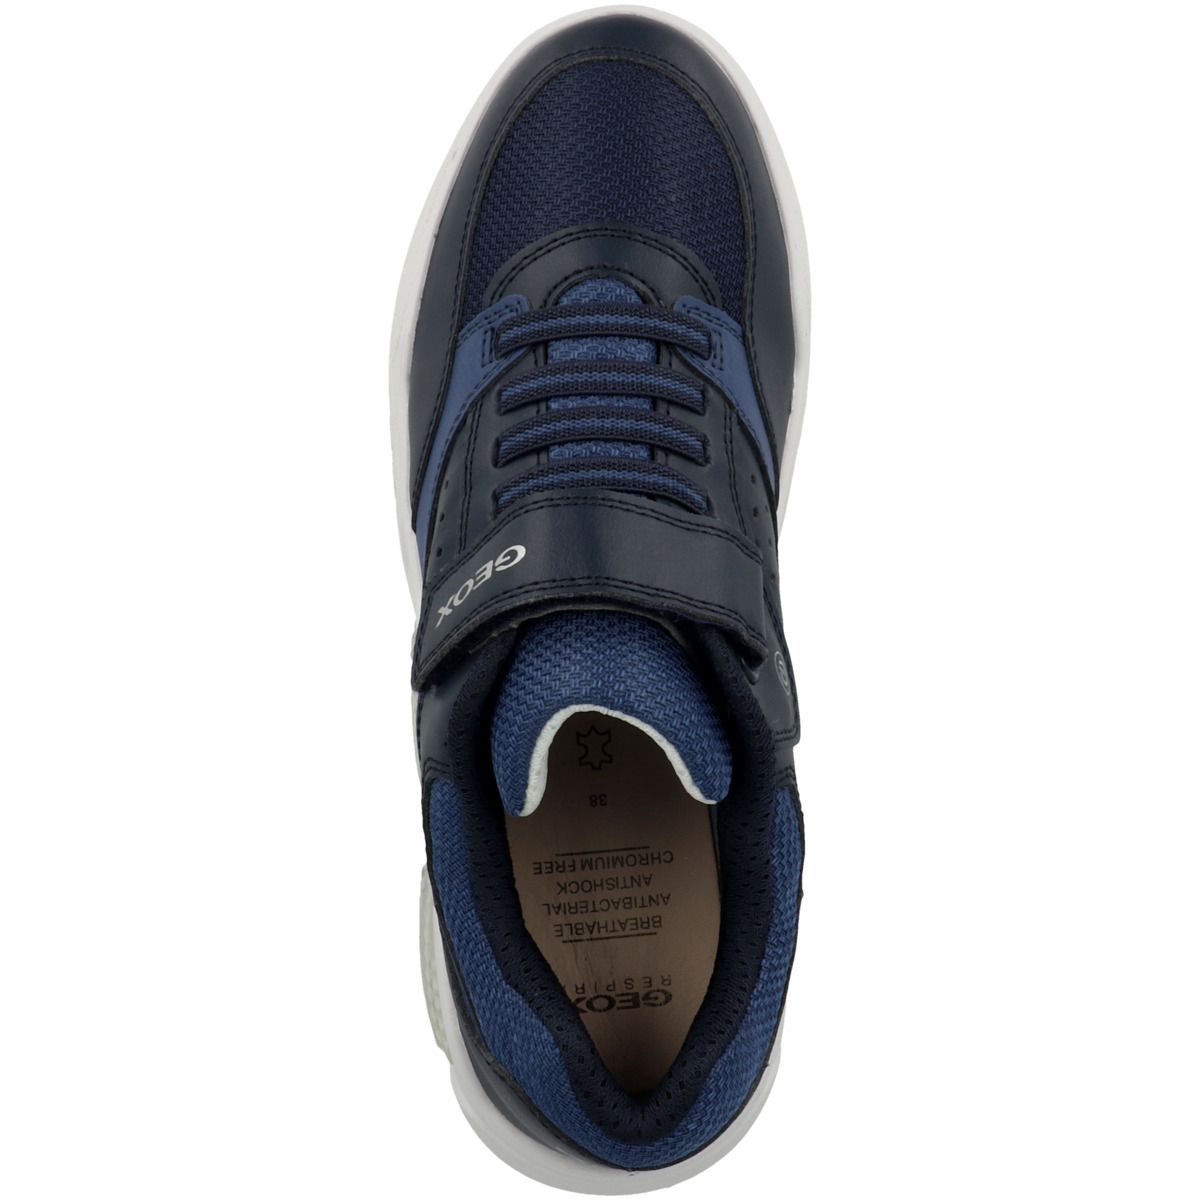 Geox J Illuminus dunkelblau Sneaker B. B low